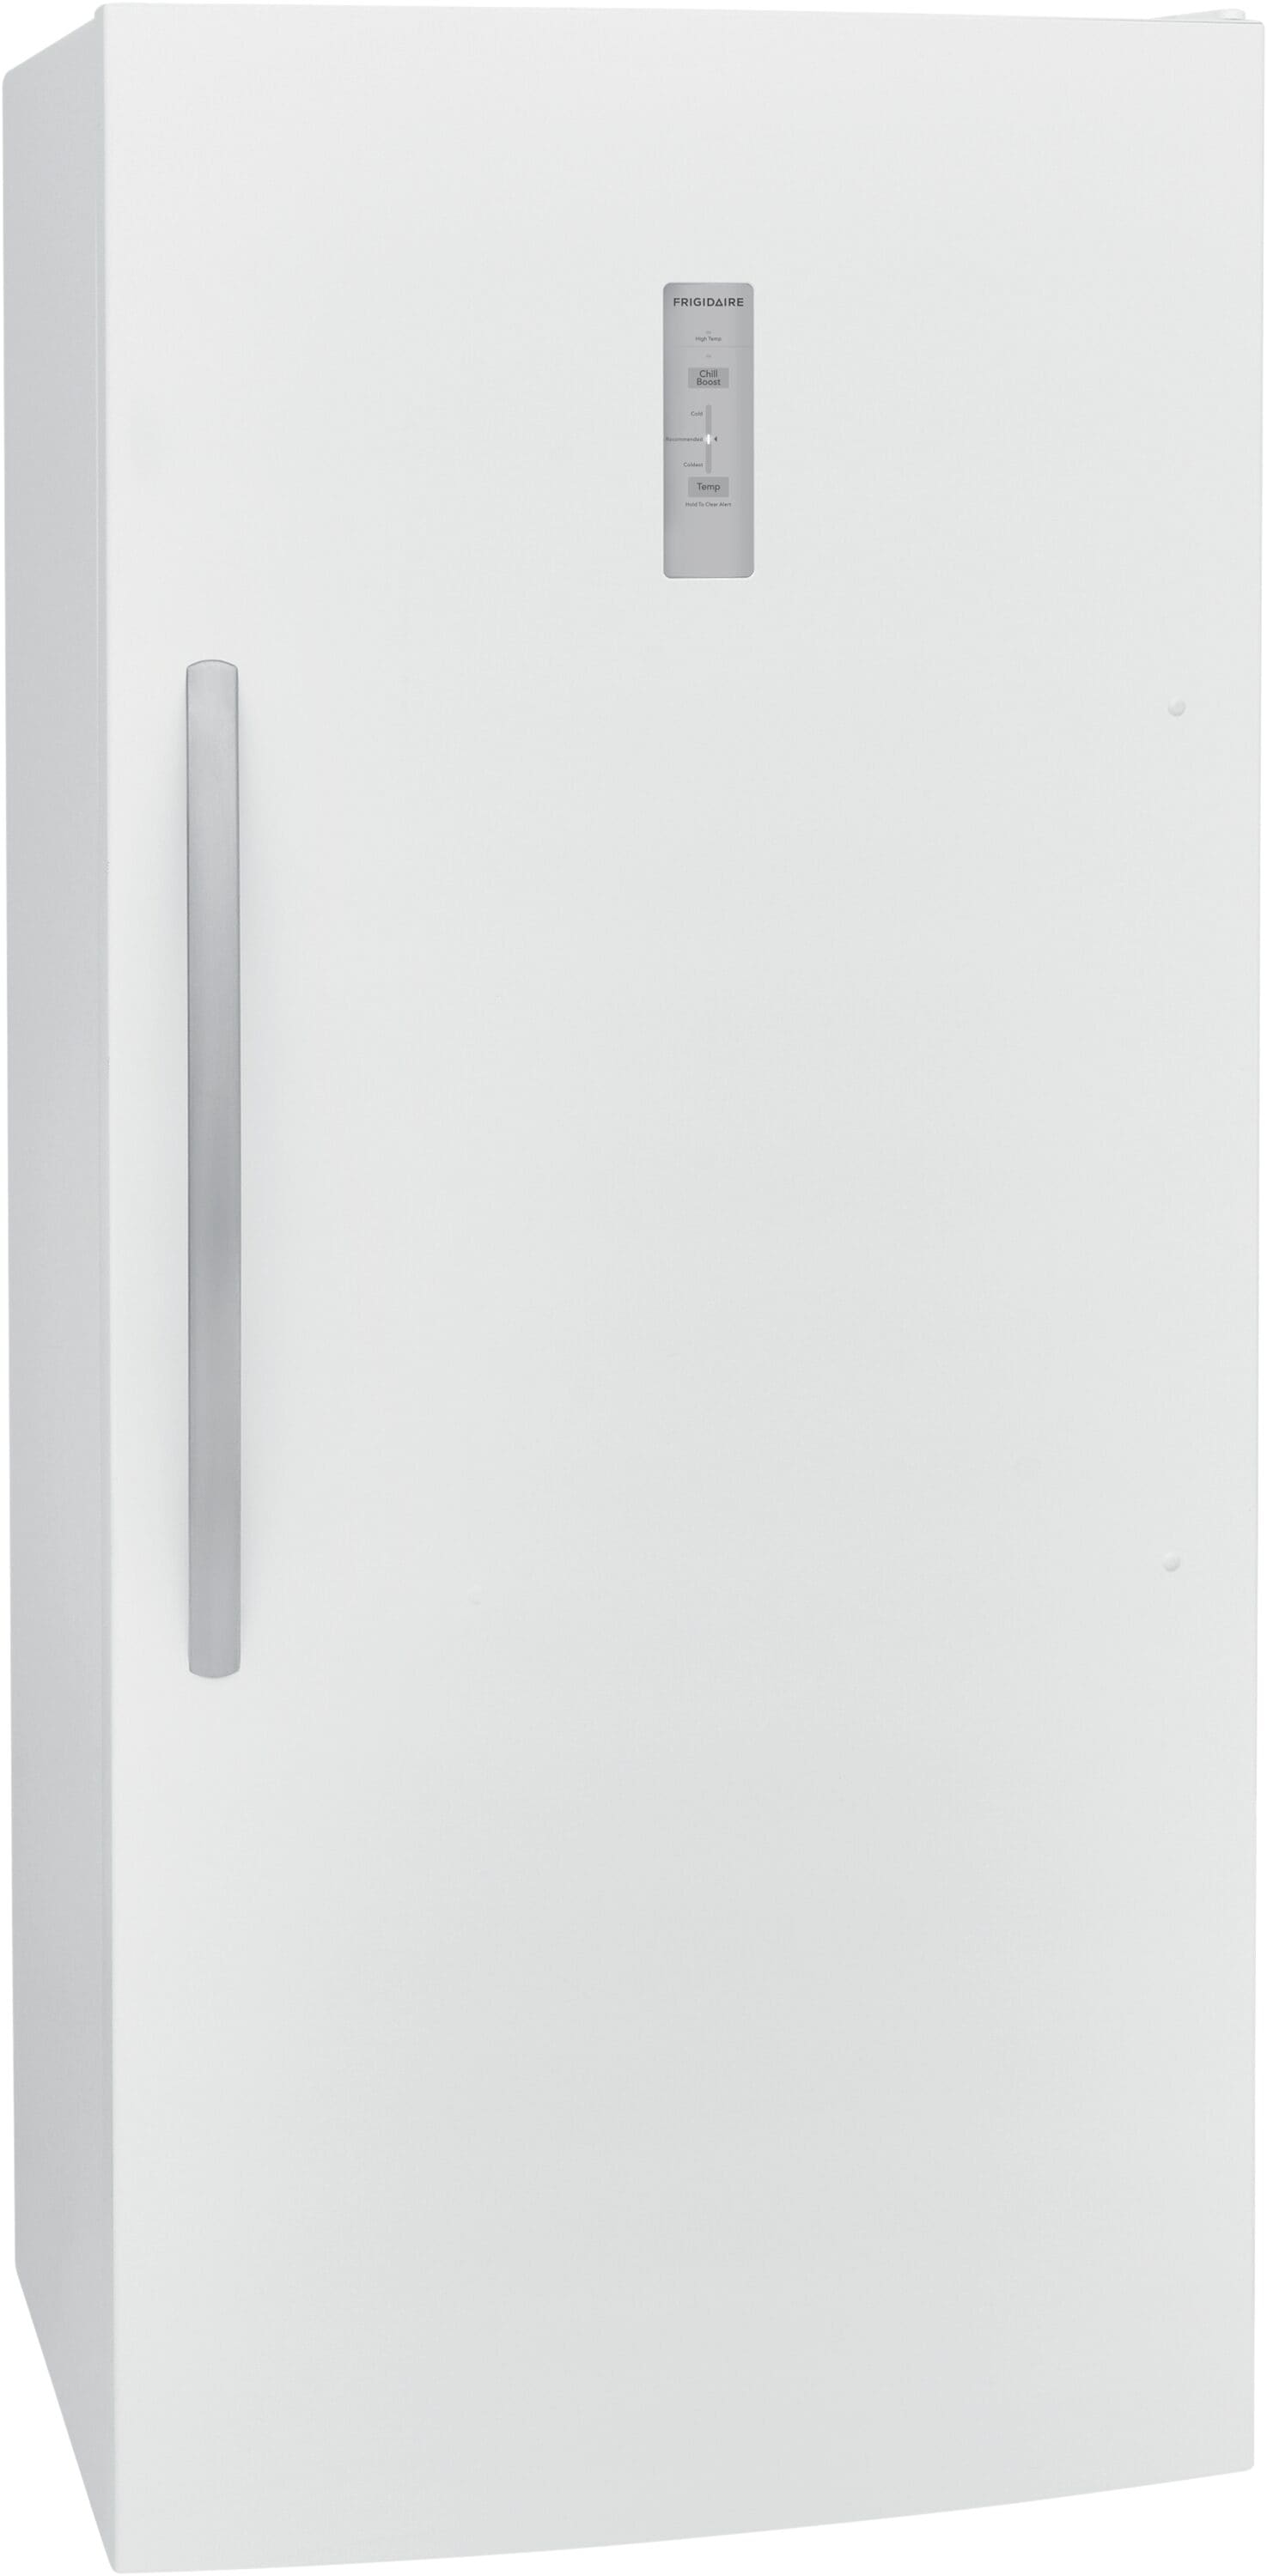 Refrigerators - Best Buy